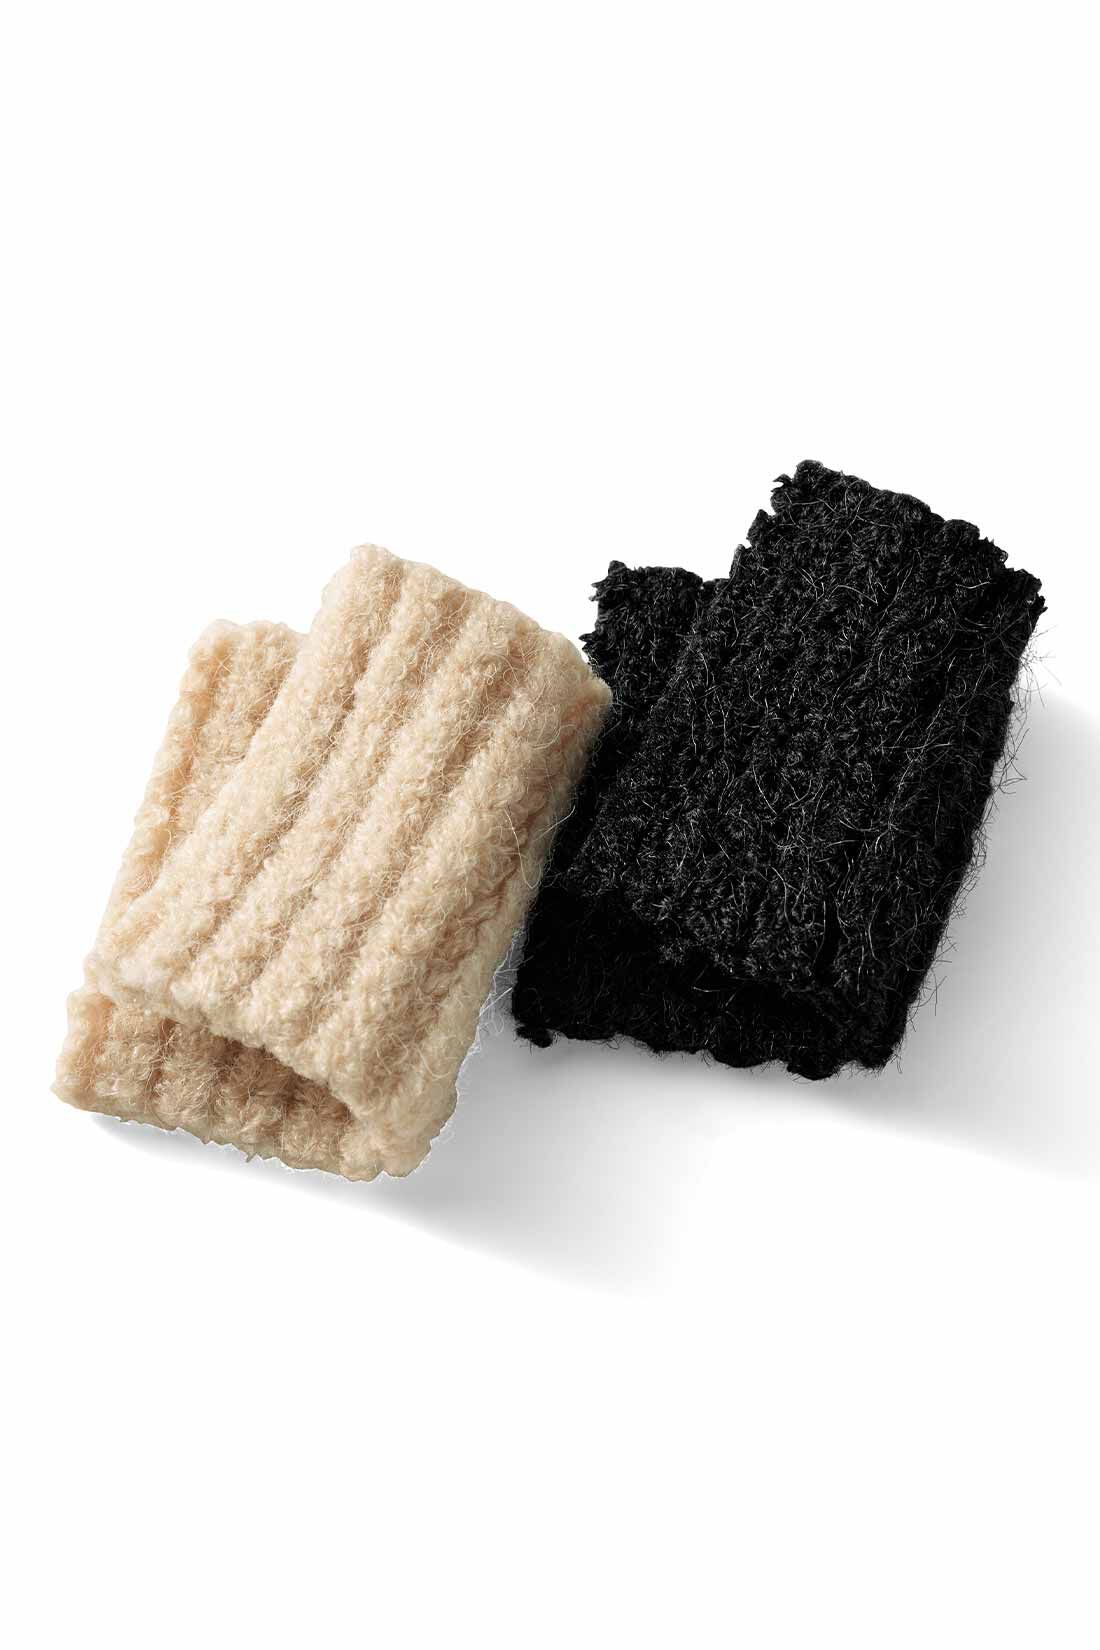 MEDE19F|MEDE19F　フェイクレイヤードニットワンピース〈ブラック〉|毛足のある、ふんわりしたアクリル・ナイロン混の糸をセレクト。気軽に手洗いできるのも魅力です。